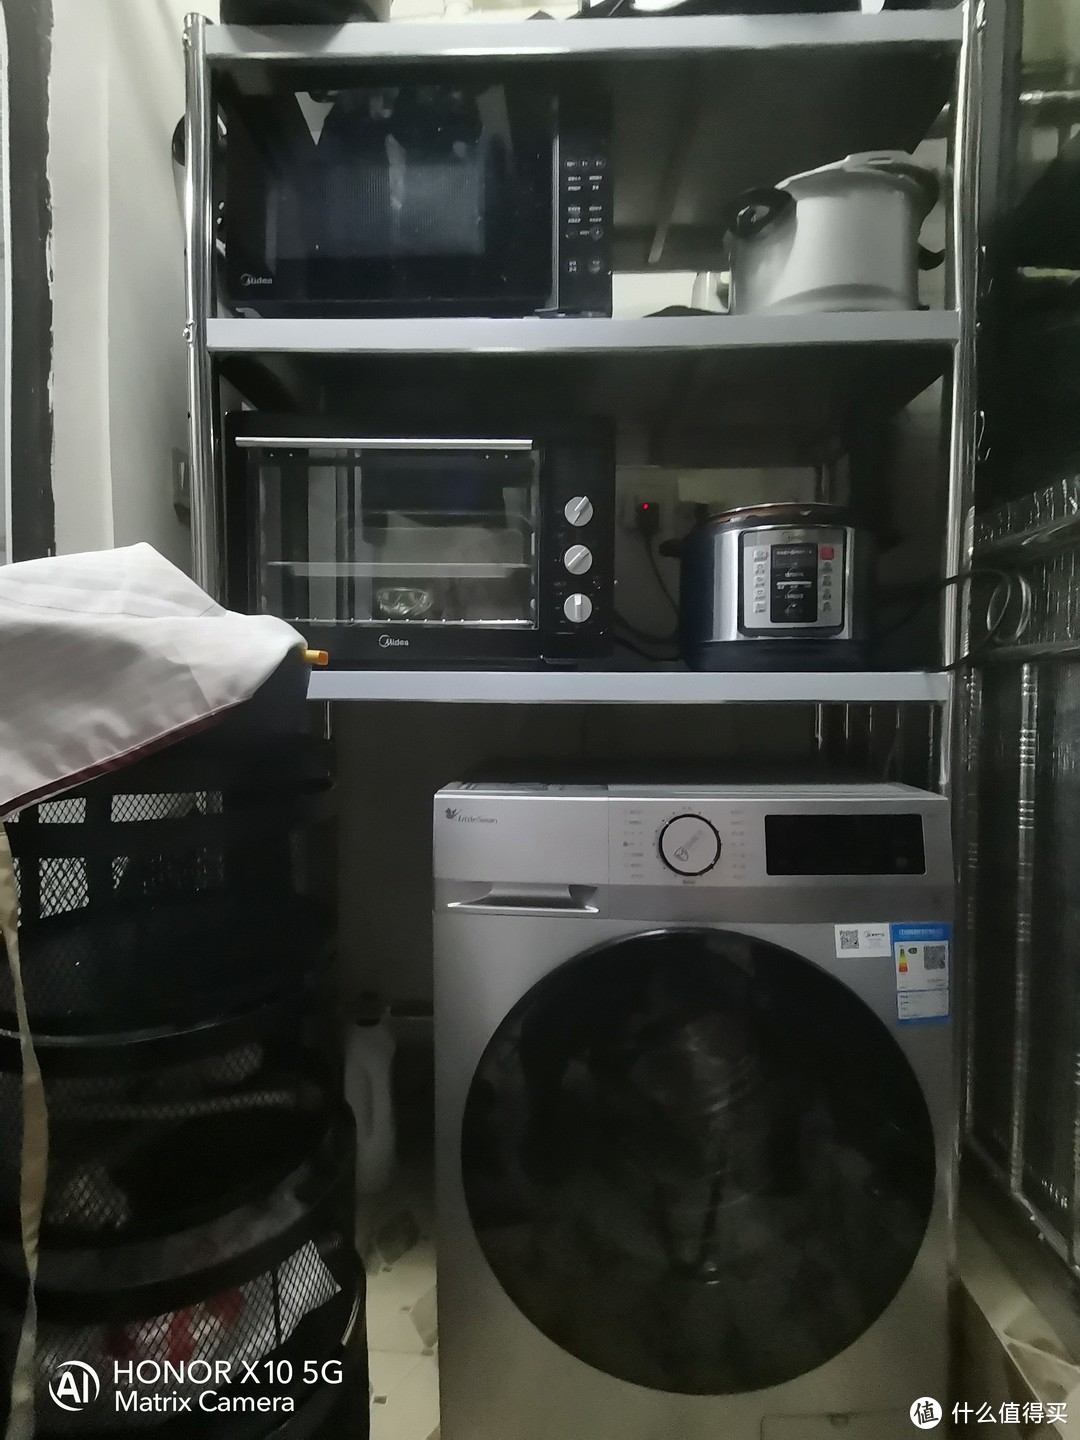 下层放置洗衣机，上层可做操作台，放置微波炉和烤箱